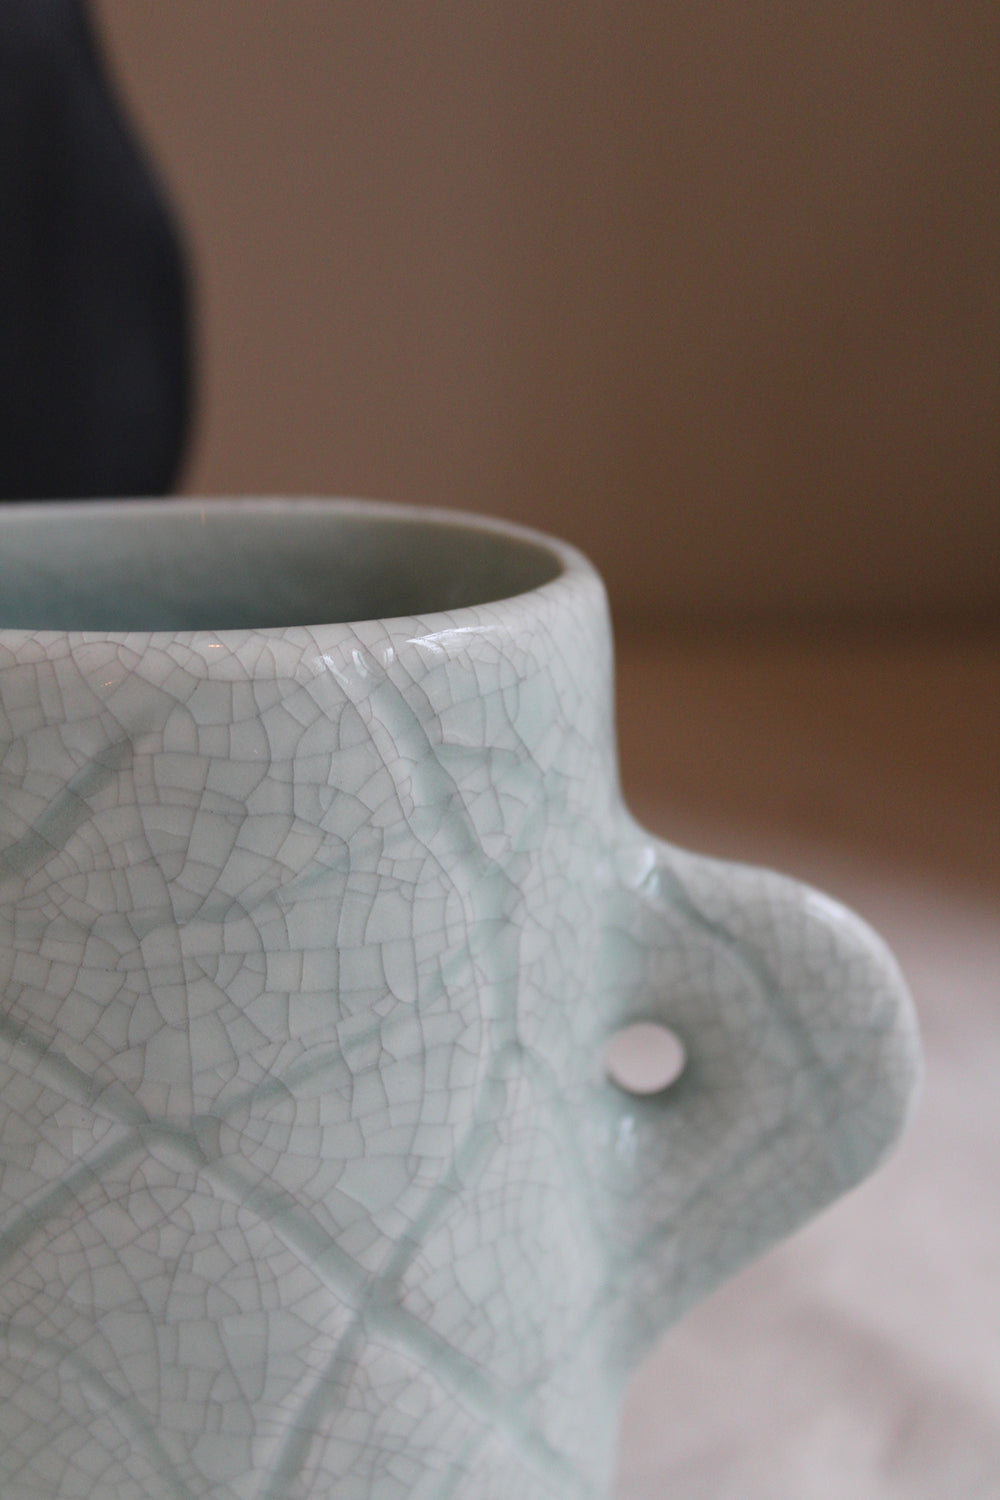 Details of the Homere Celadon Vase by Jars Ceramistes.